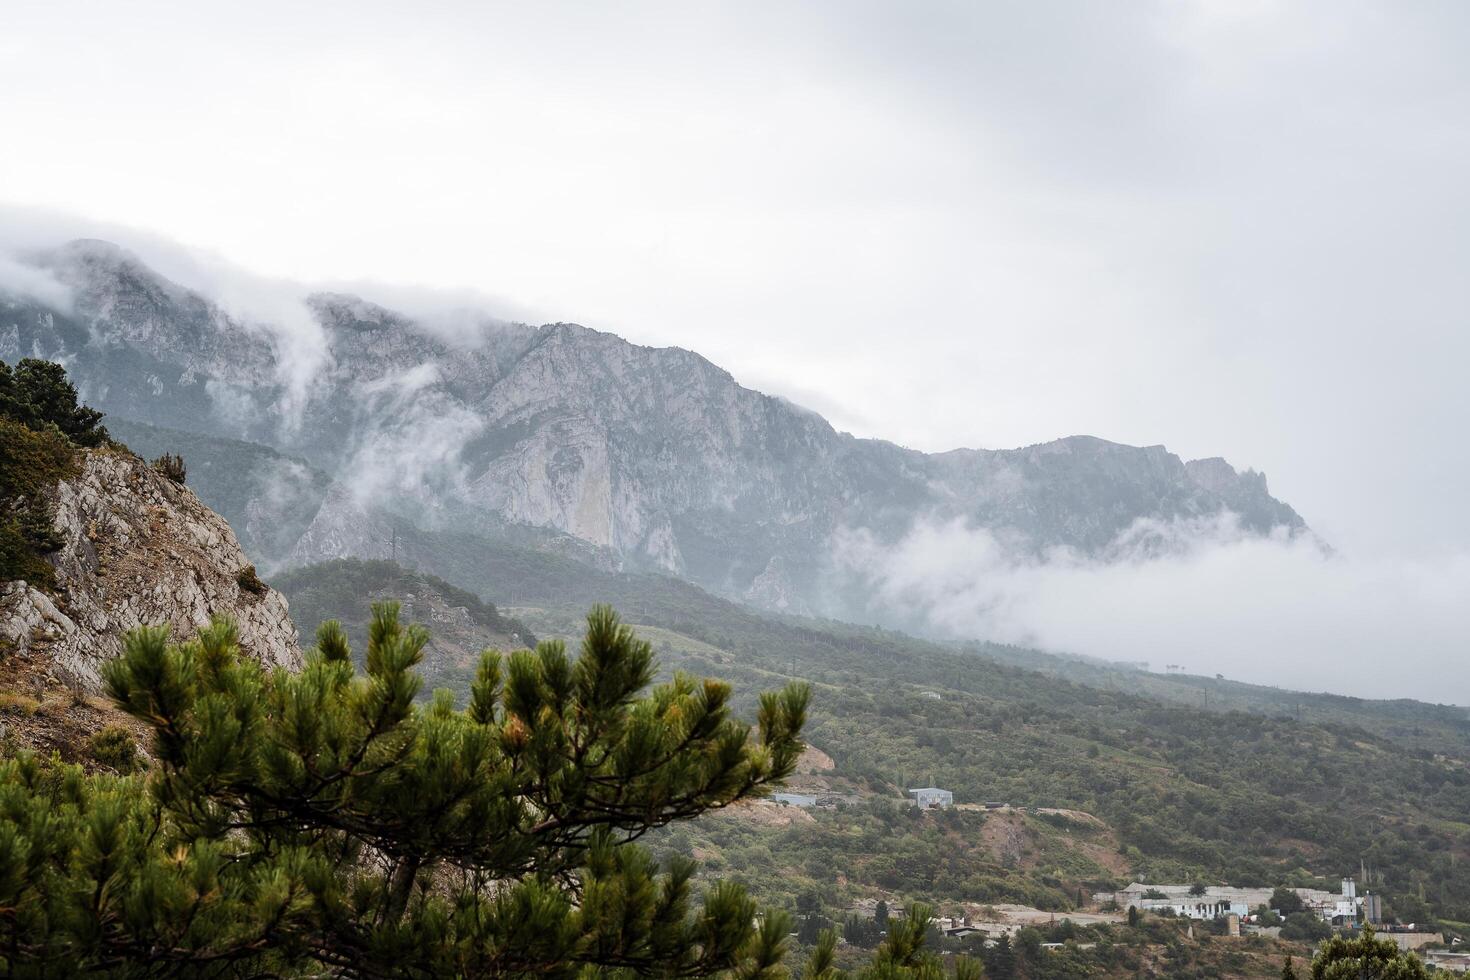 sfeervol berg landschap. de bergen zijn gedekt met mist, welke daalt af in de vallei. in de voorgrond is de top van de boom foto